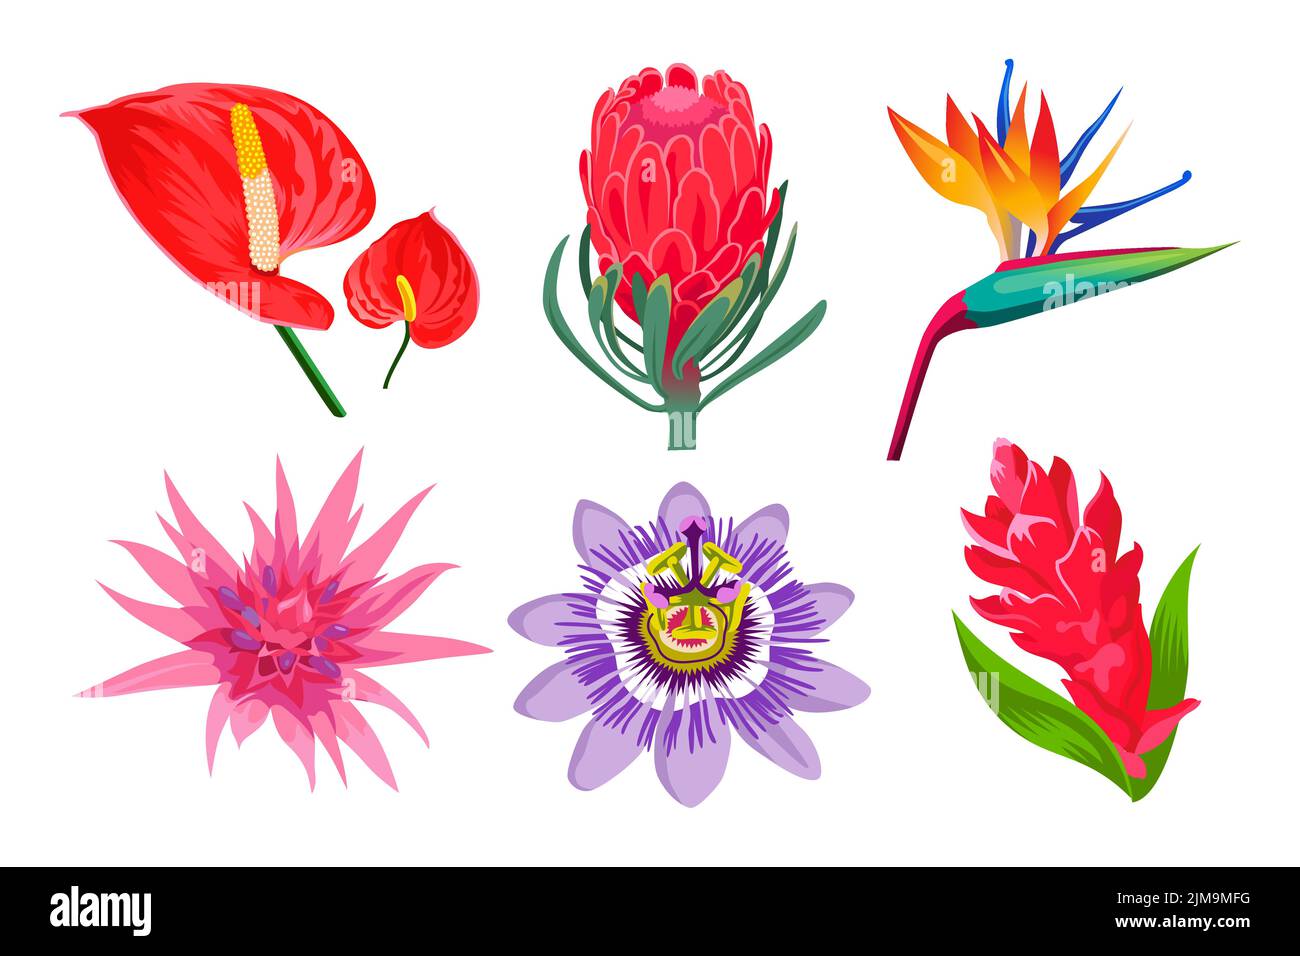 Exotische Dschungel Blumen Cartoon Illustration Sammlung. Wilde tropische hawaiianische oder polynesische Pflanzen. Magnolie oder Orchidee im Garten, Bali oder der Karibik Stock Vektor